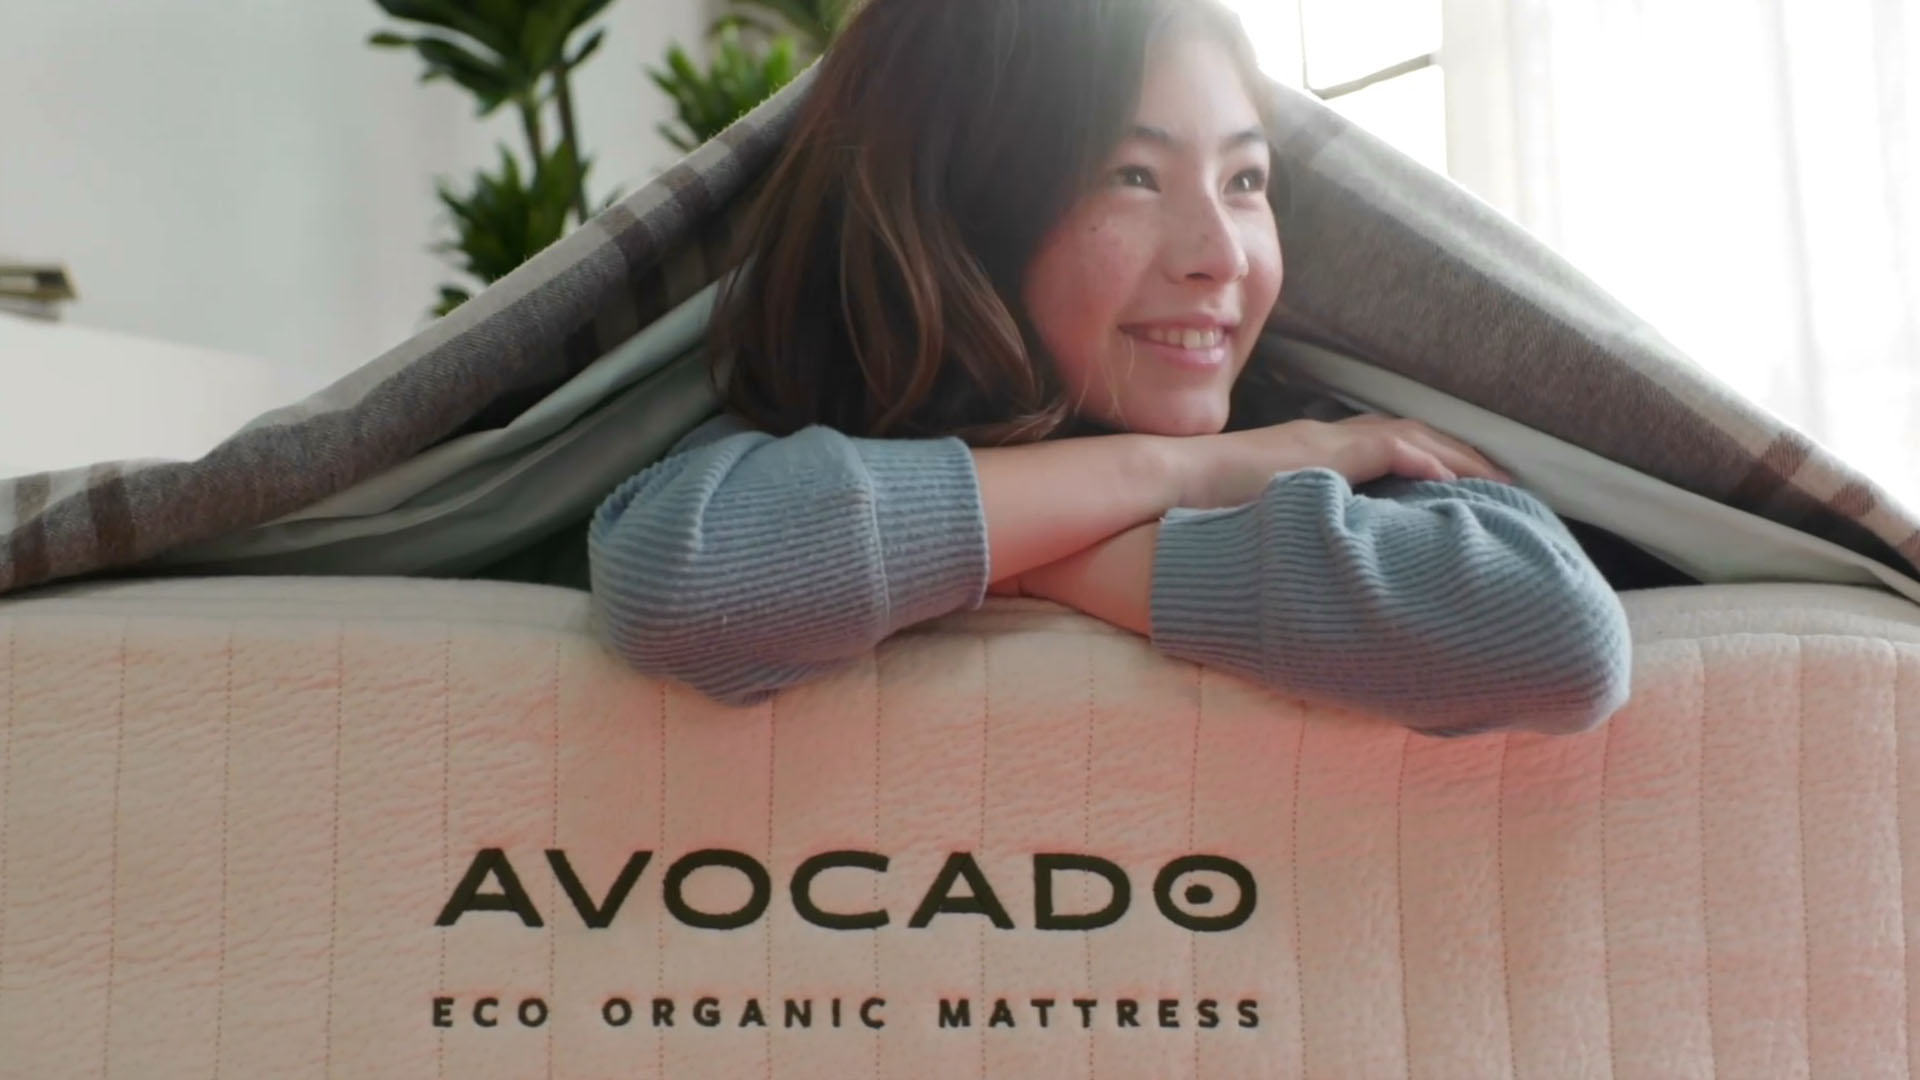 Who sells Avocado mattress near me in Rockwall